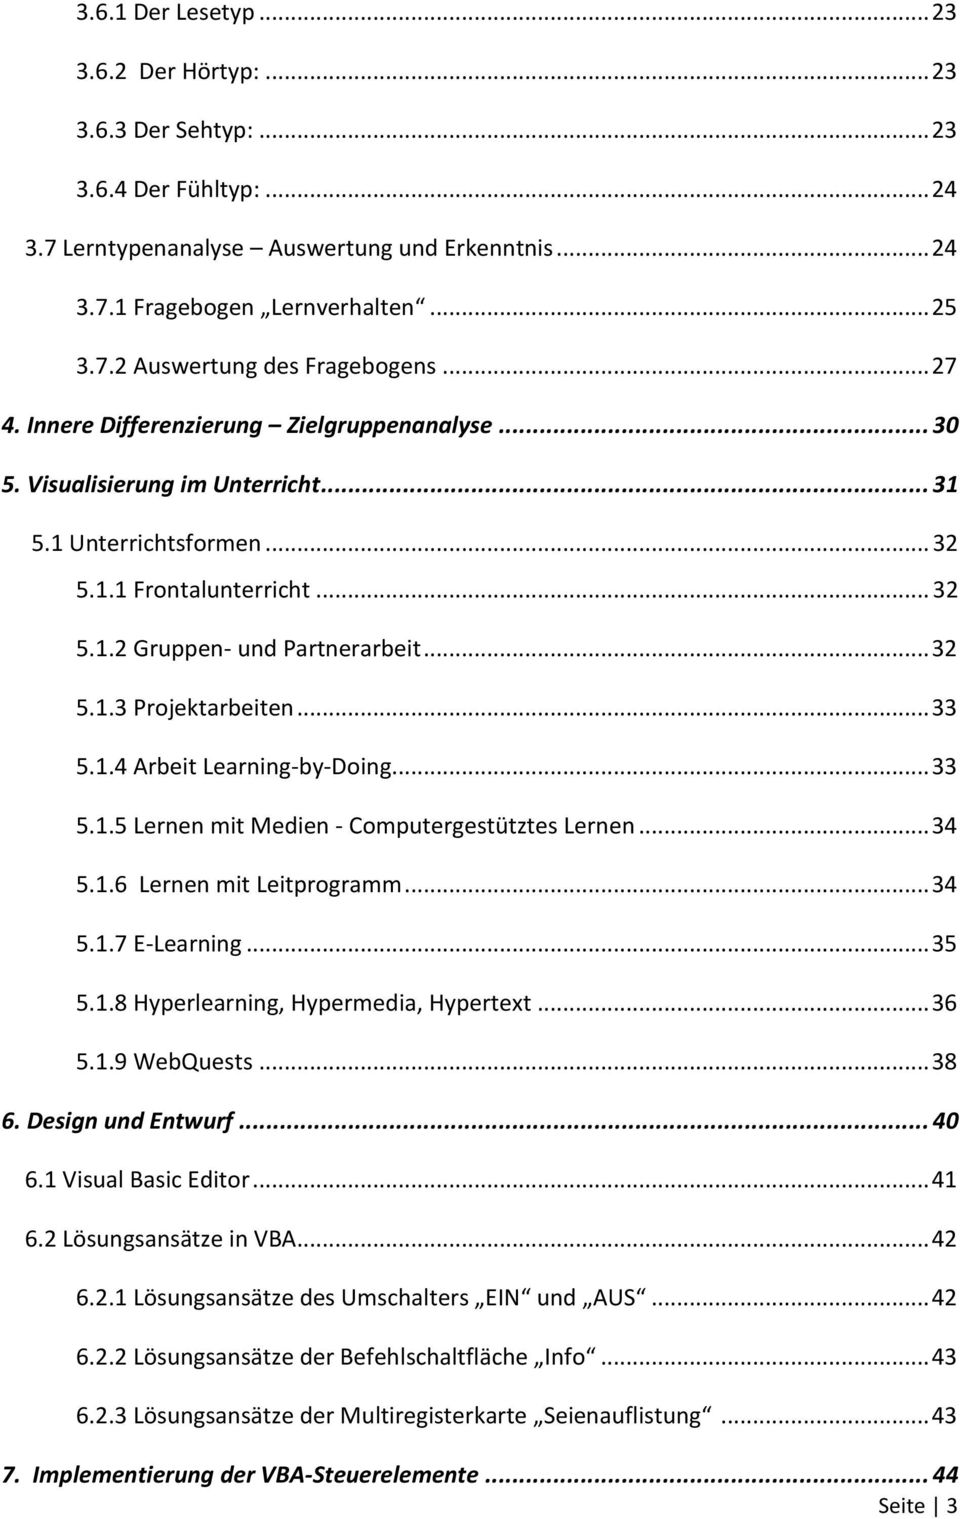 .. 33 5.1.4 Arbeit Learning-by-Doing... 33 5.1.5 Lernen mit Medien - Computergestütztes Lernen... 34 5.1.6 Lernen mit Leitprogramm... 34 5.1.7 E-Learning... 35 5.1.8 Hyperlearning, Hypermedia, Hypertext.